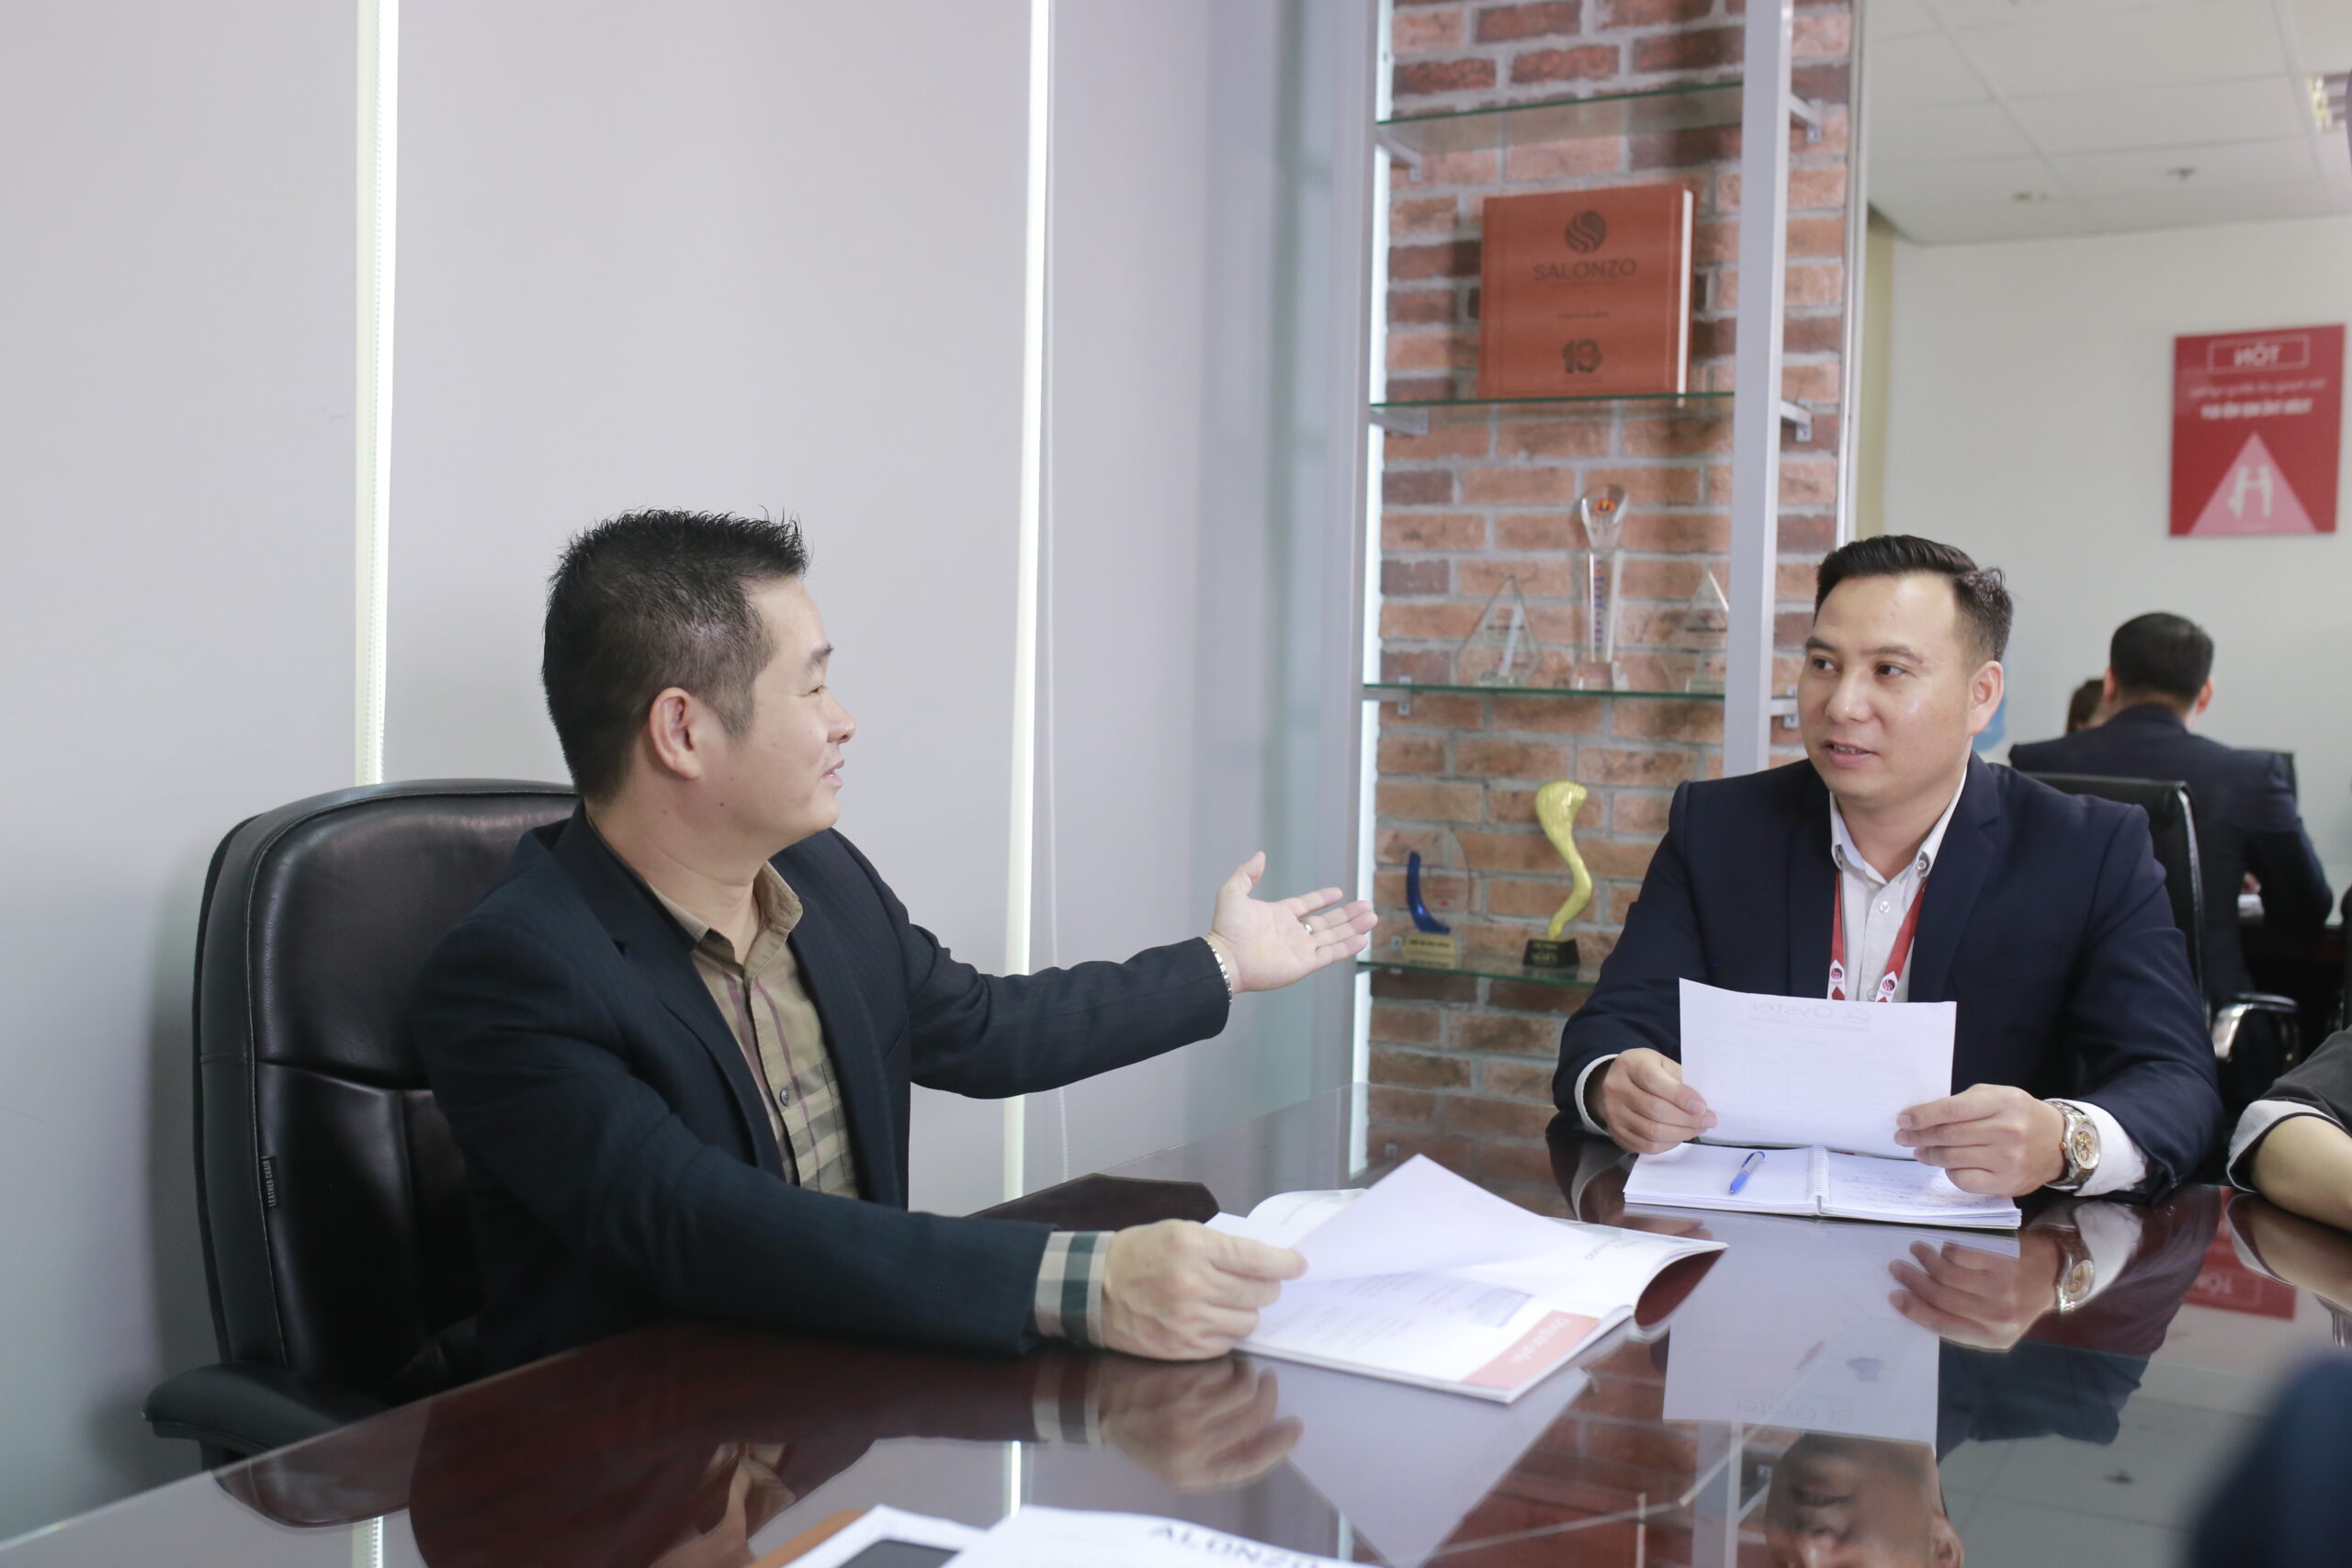 Tổng Giám Đốc Trần Hoàn Sinh (bên trái) trao đổi cùng Trưởng phòng kinh doanh khu vực miền Bắc - Anh Nguyễn Xuân Hiển